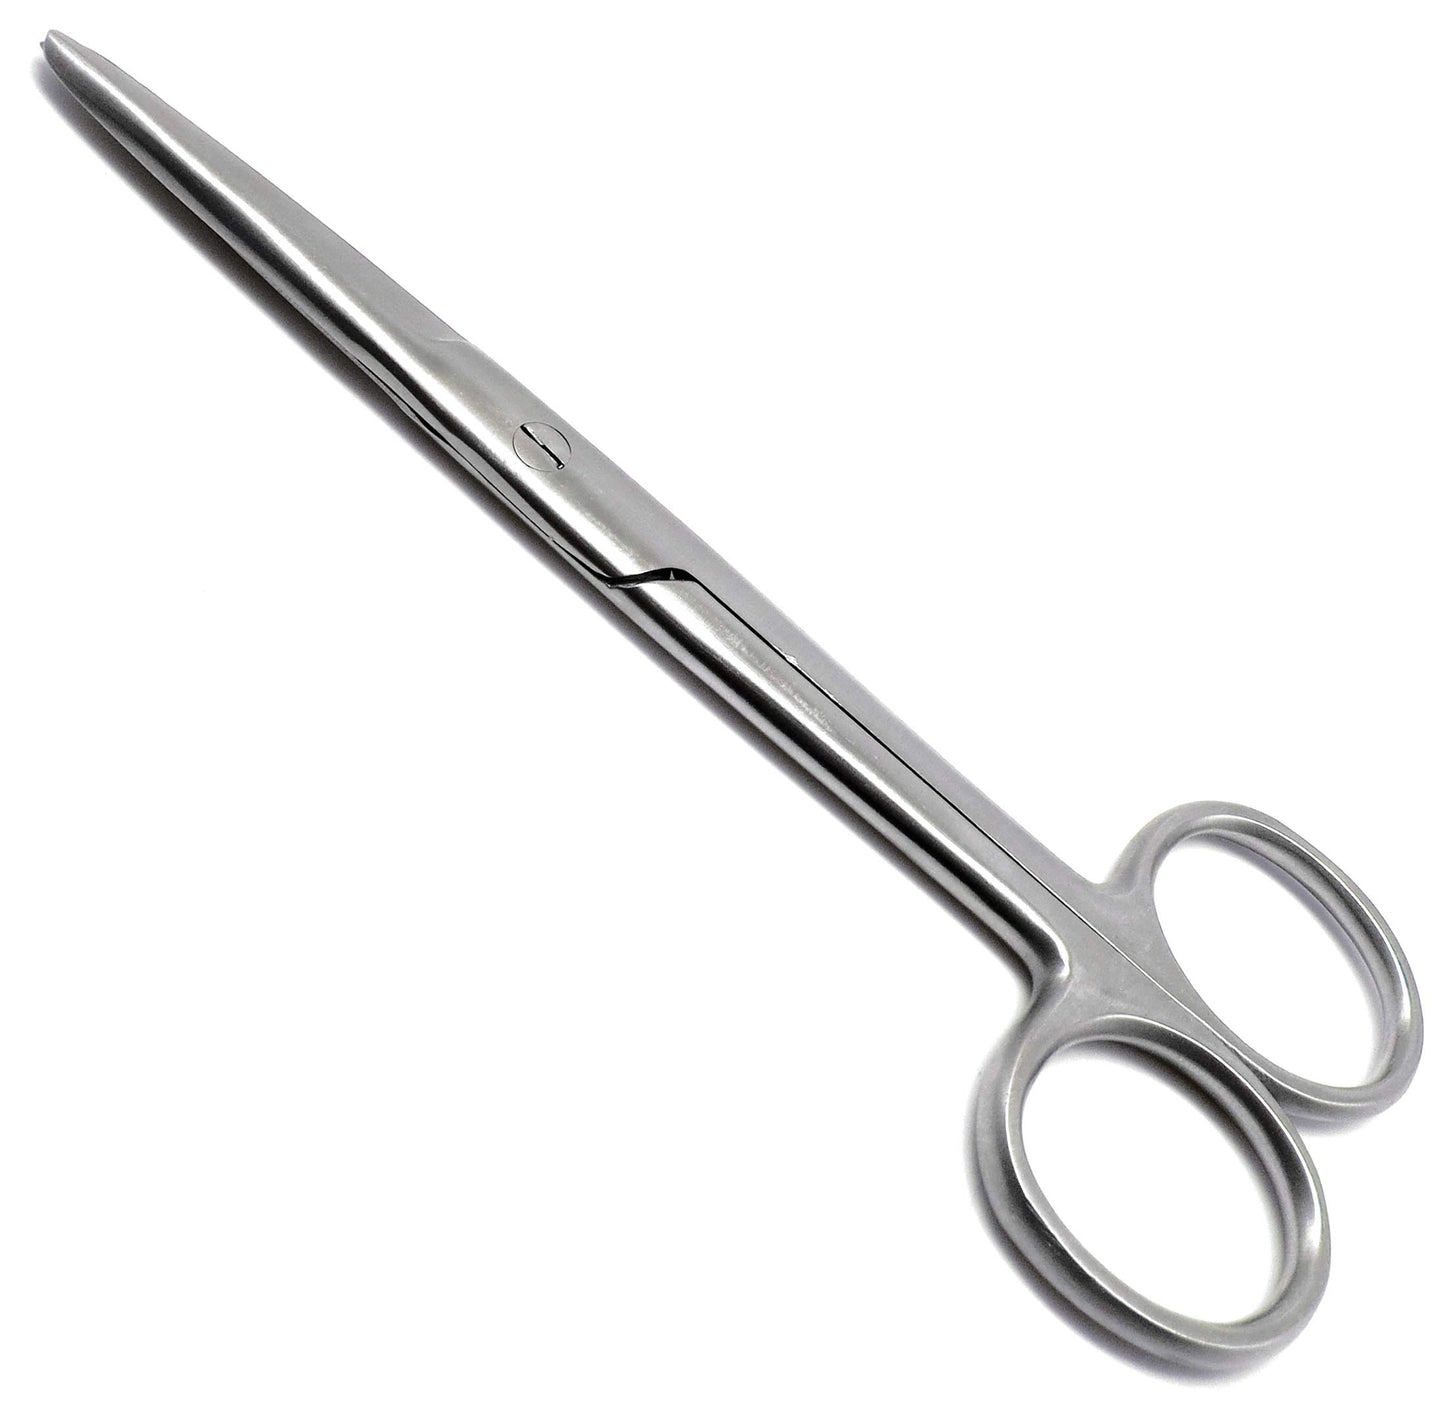 # Operating Scissors